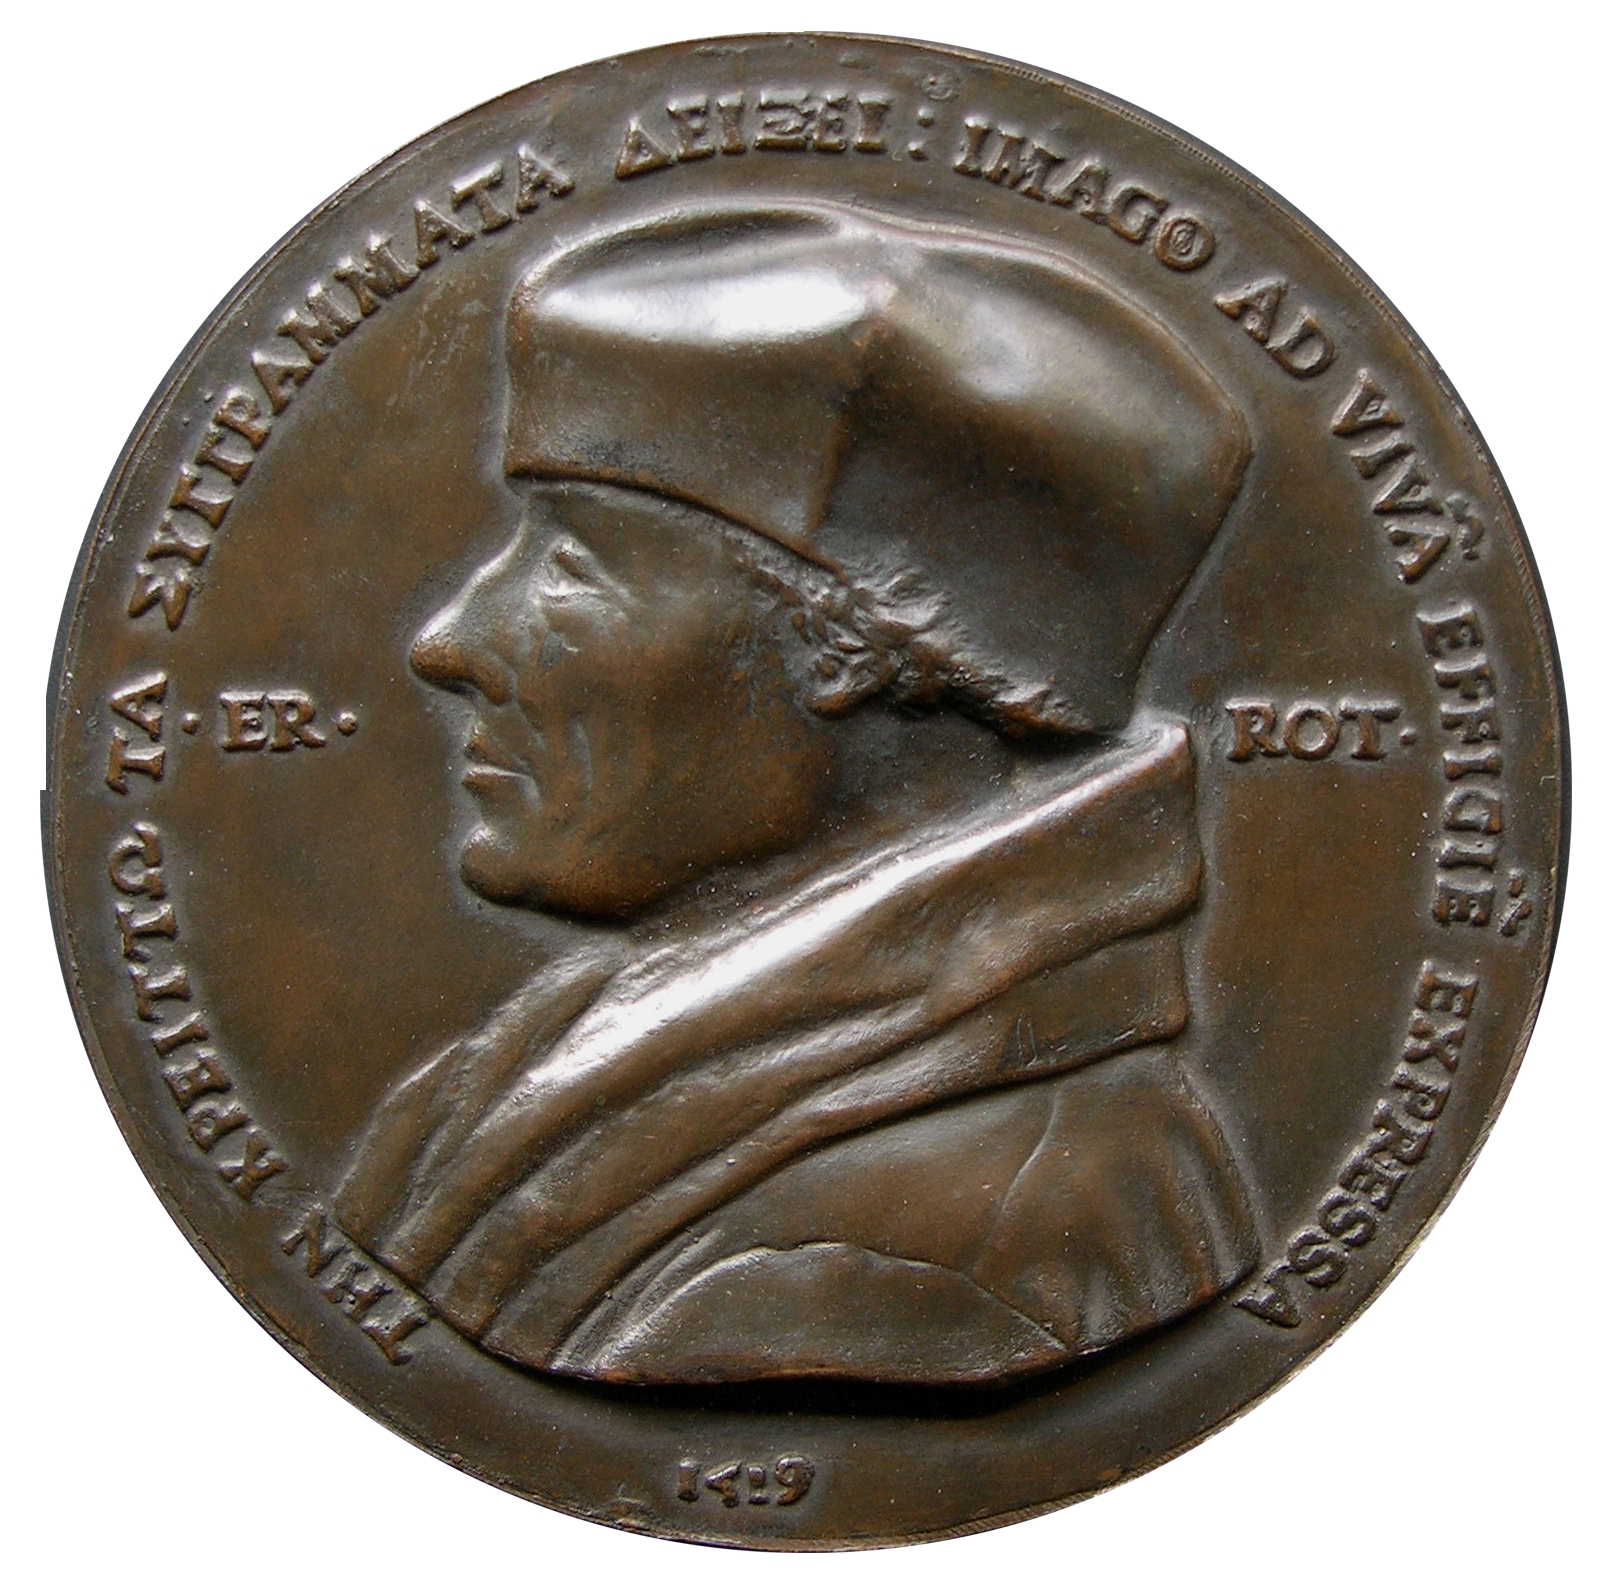 1519 Erasmus